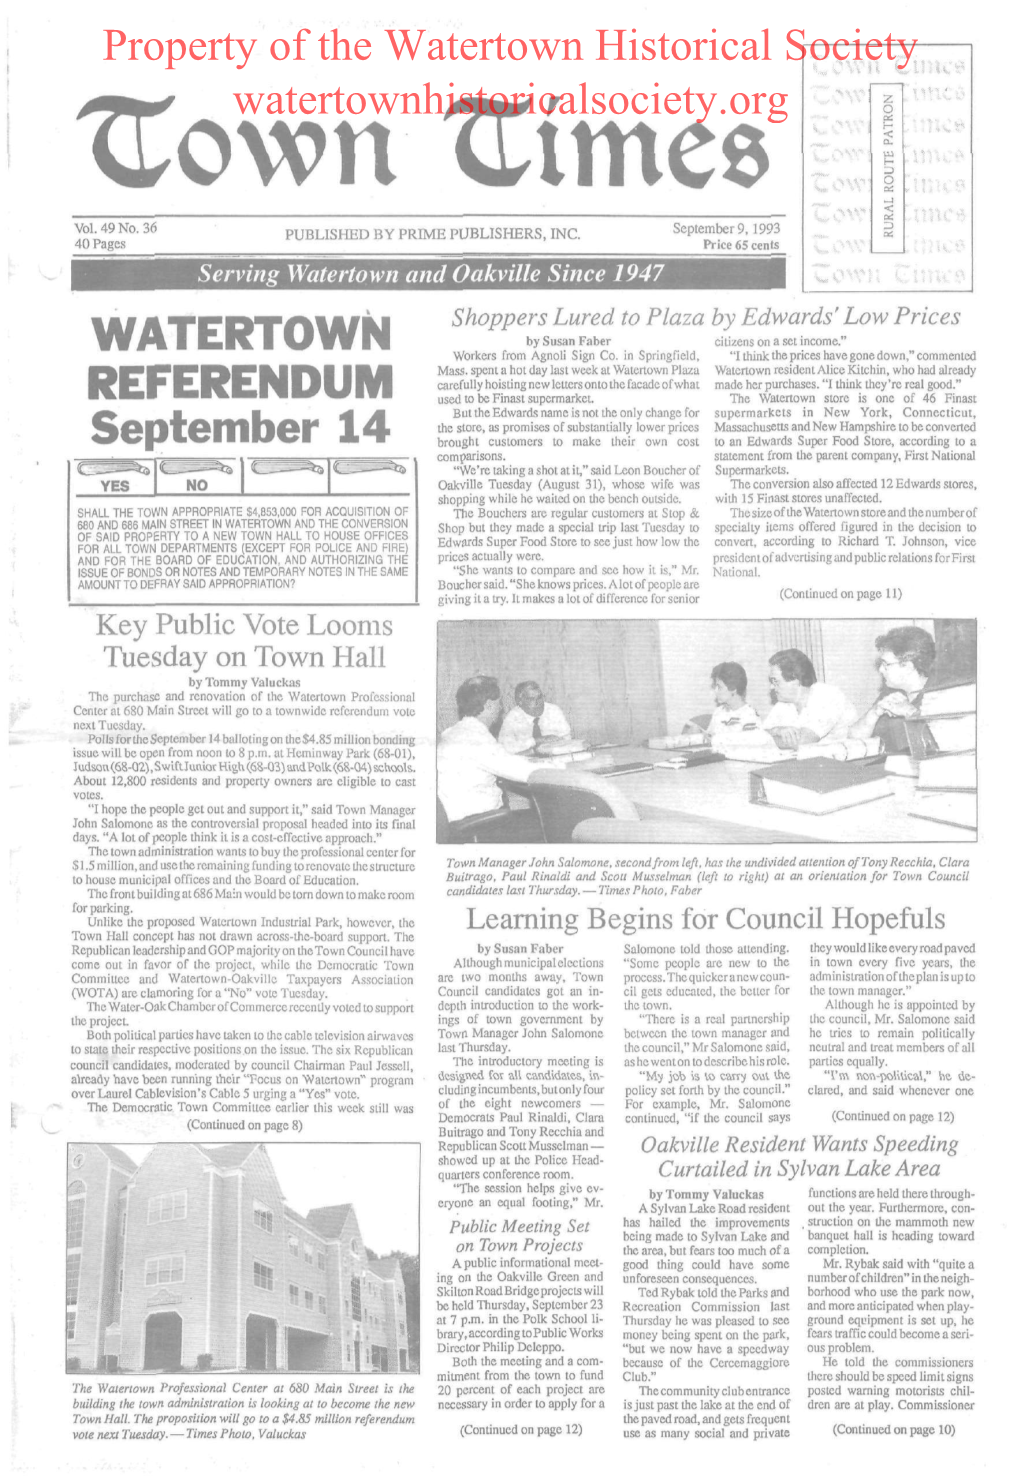 Watertown Historical Society Watertownhistoricalsociety.Org • Tlimee U Vol